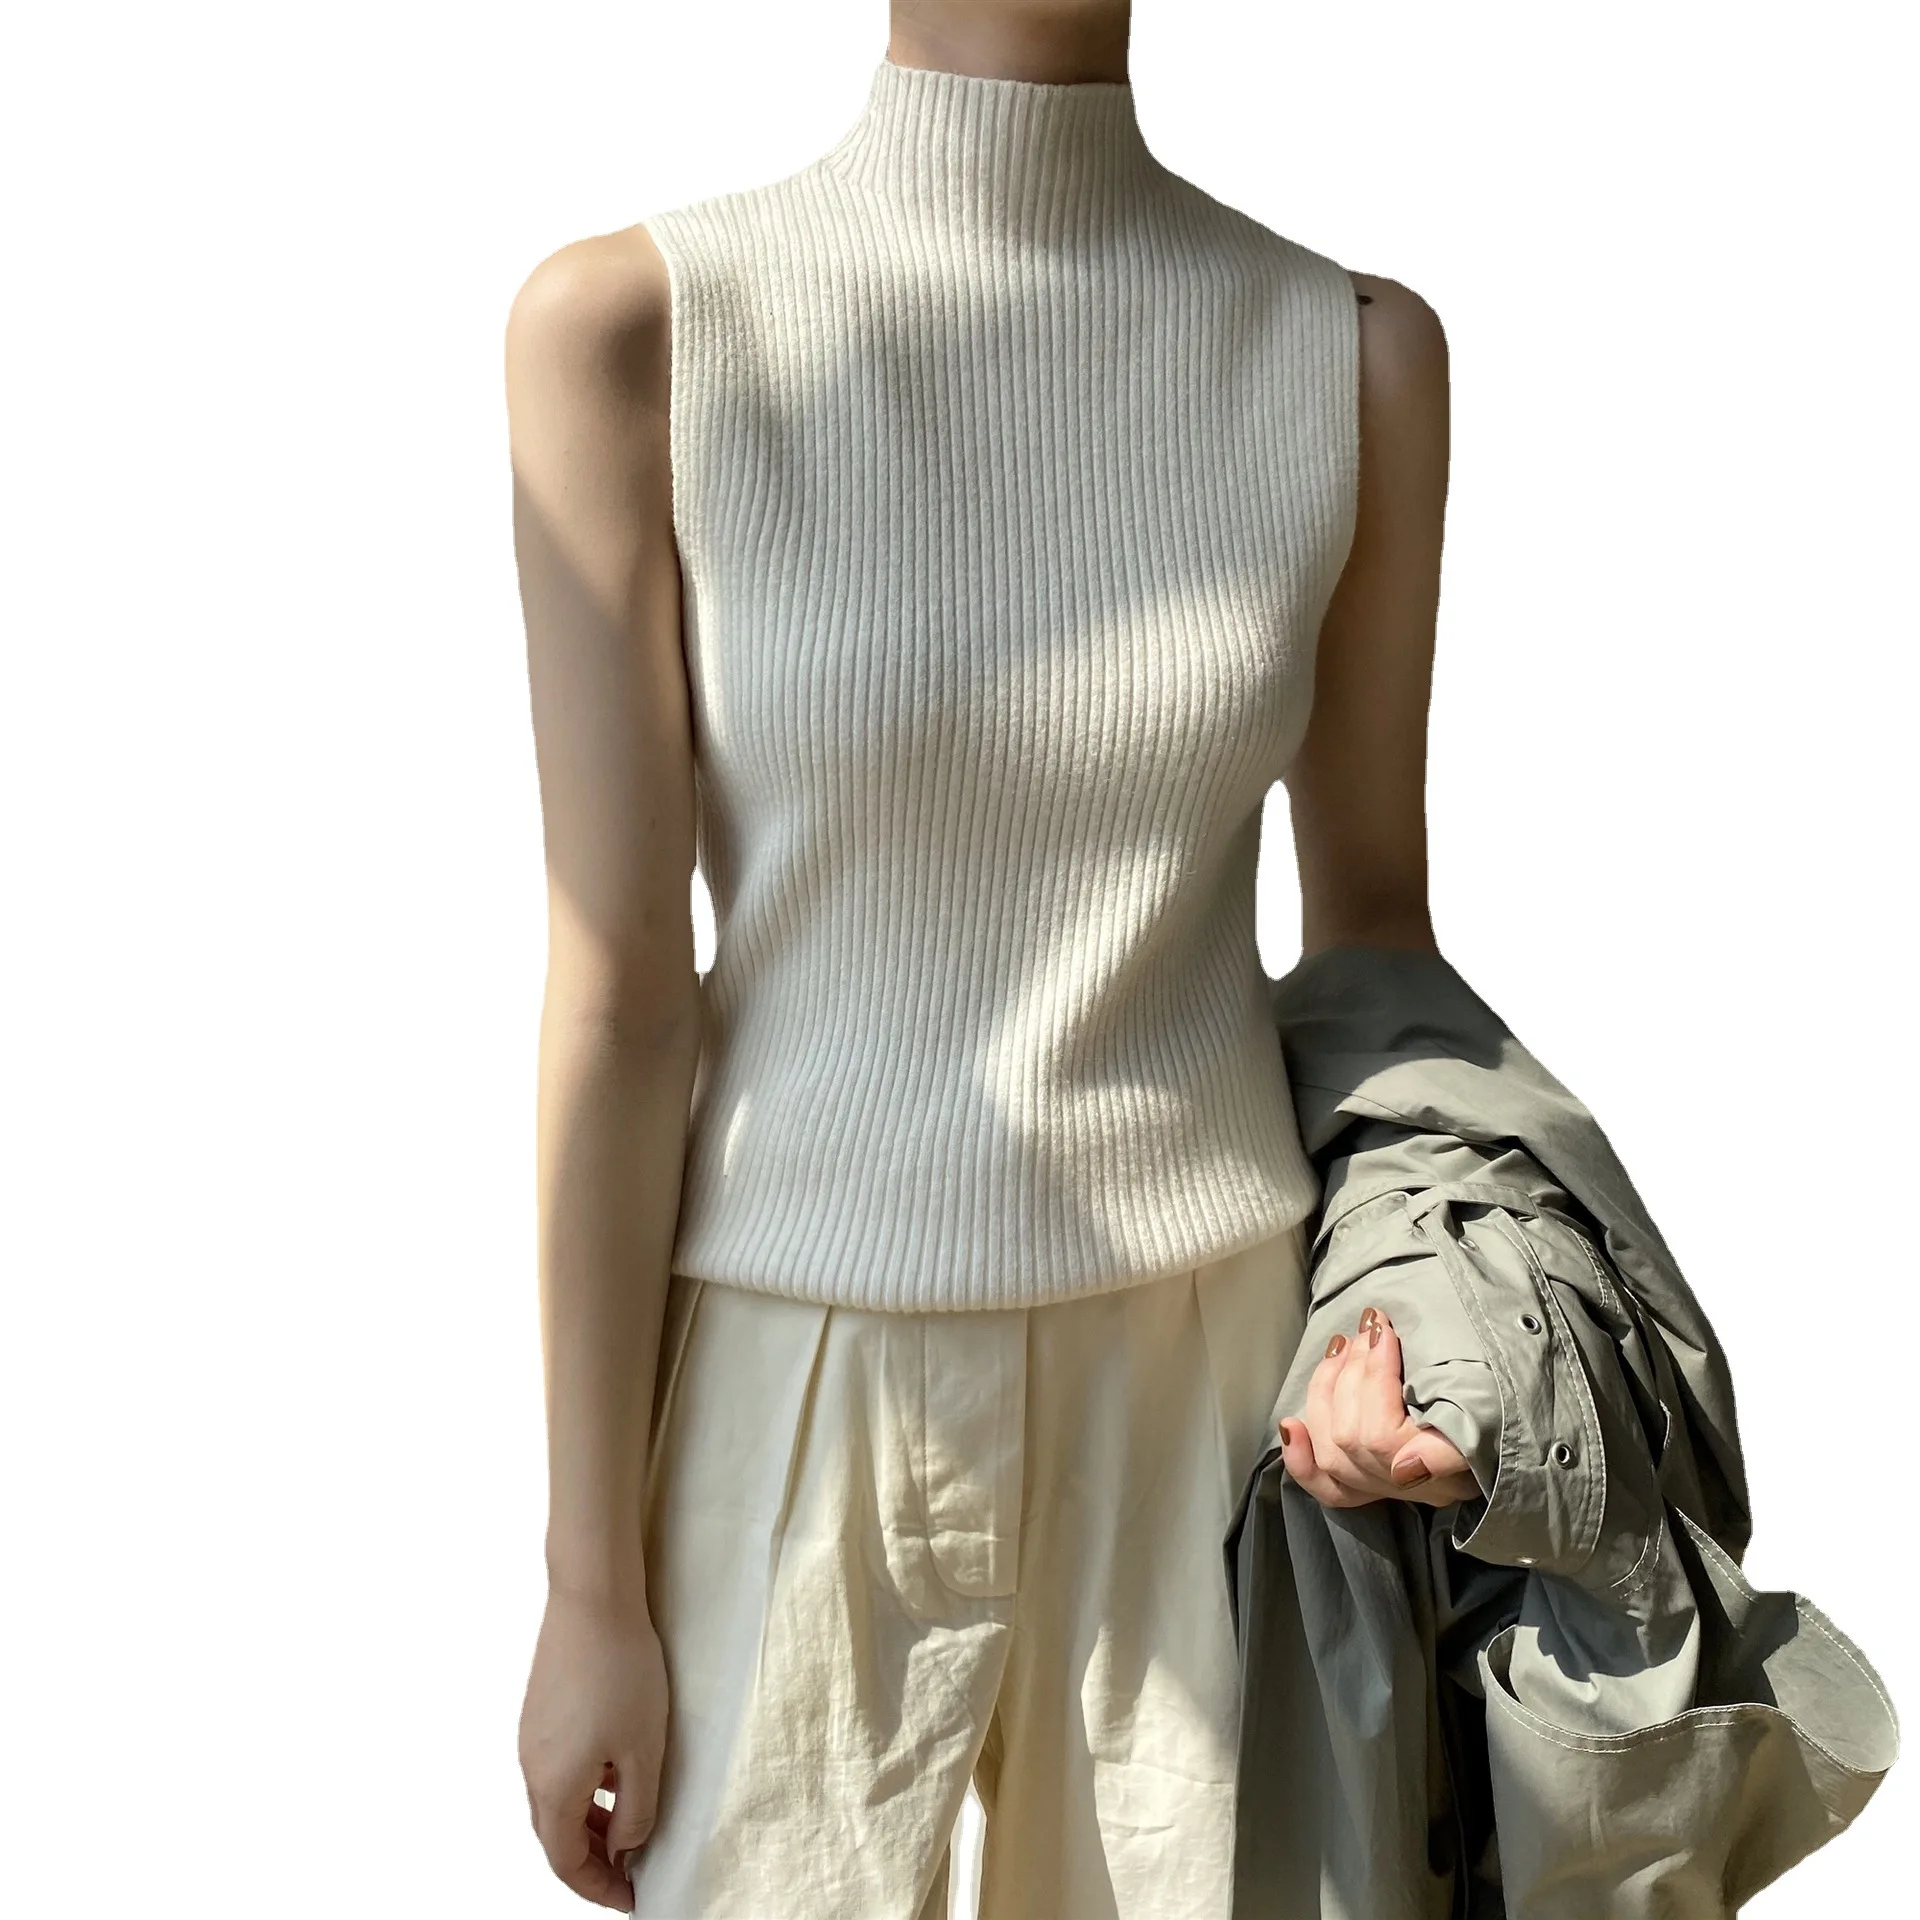 Kore Kolsuz Triko 2021 Streetwear Moda Sonbahar Yeni Kadın Düz Renk Örme Yelek Yüksek Boyun Casual Tops Kazak Beyaz Görüntü 4